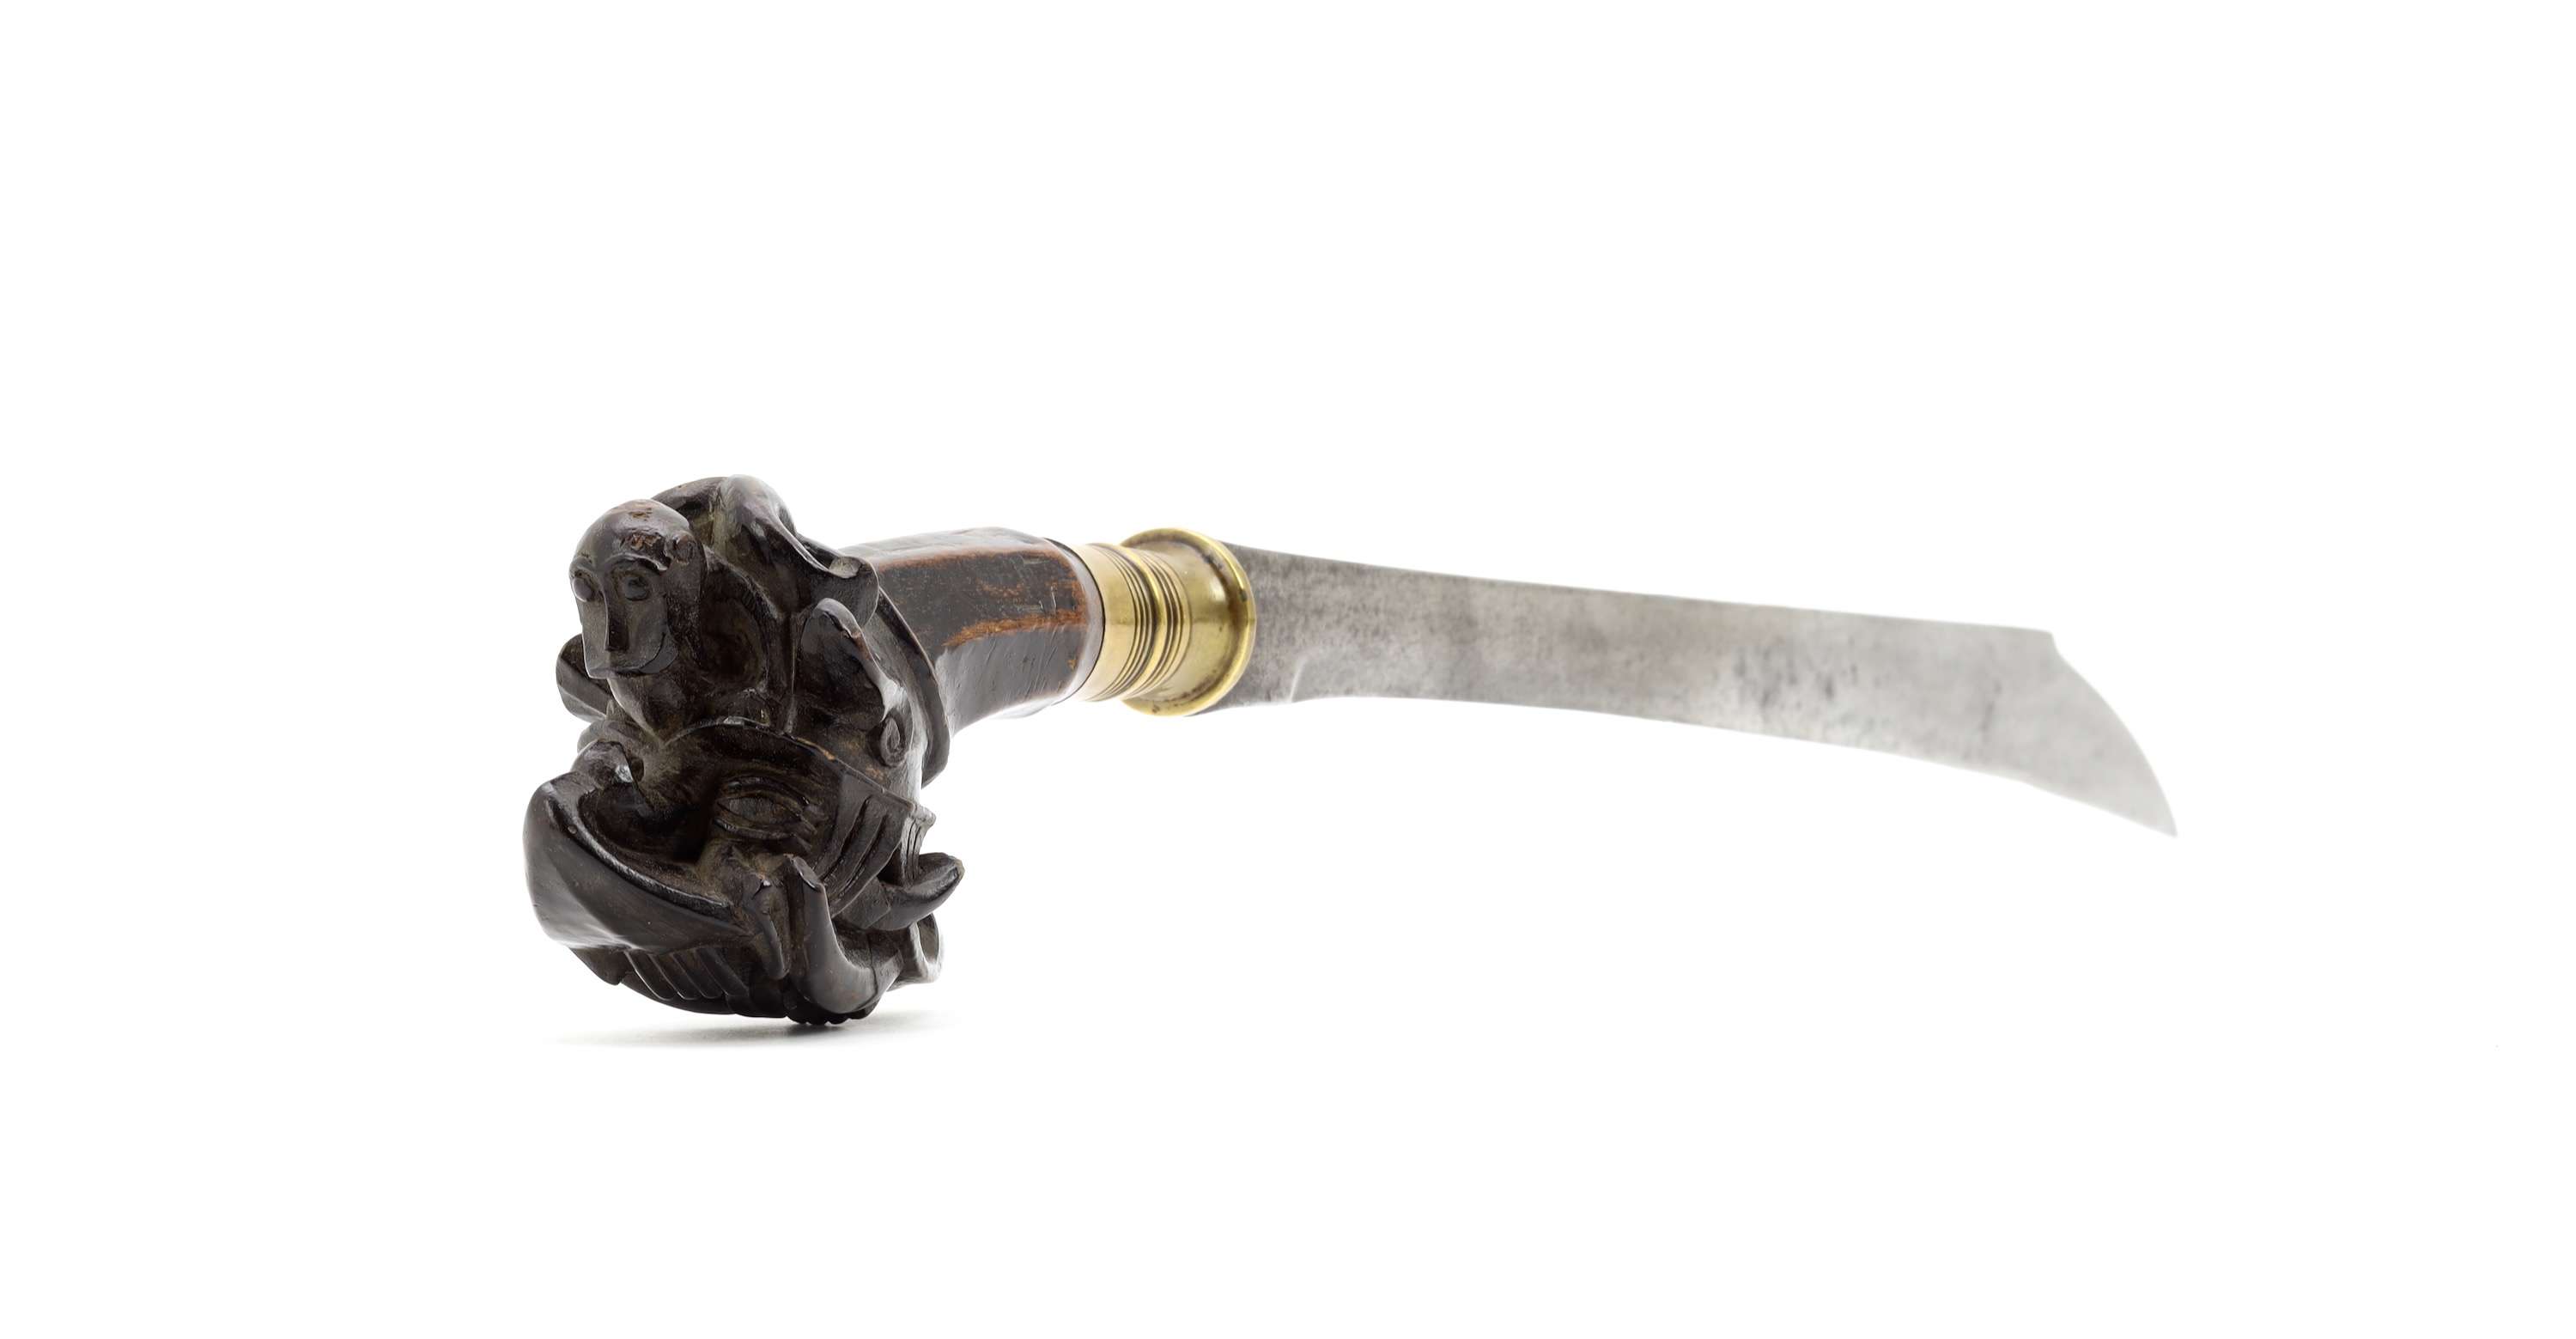 Fine and complete antique Nias sword called belatu